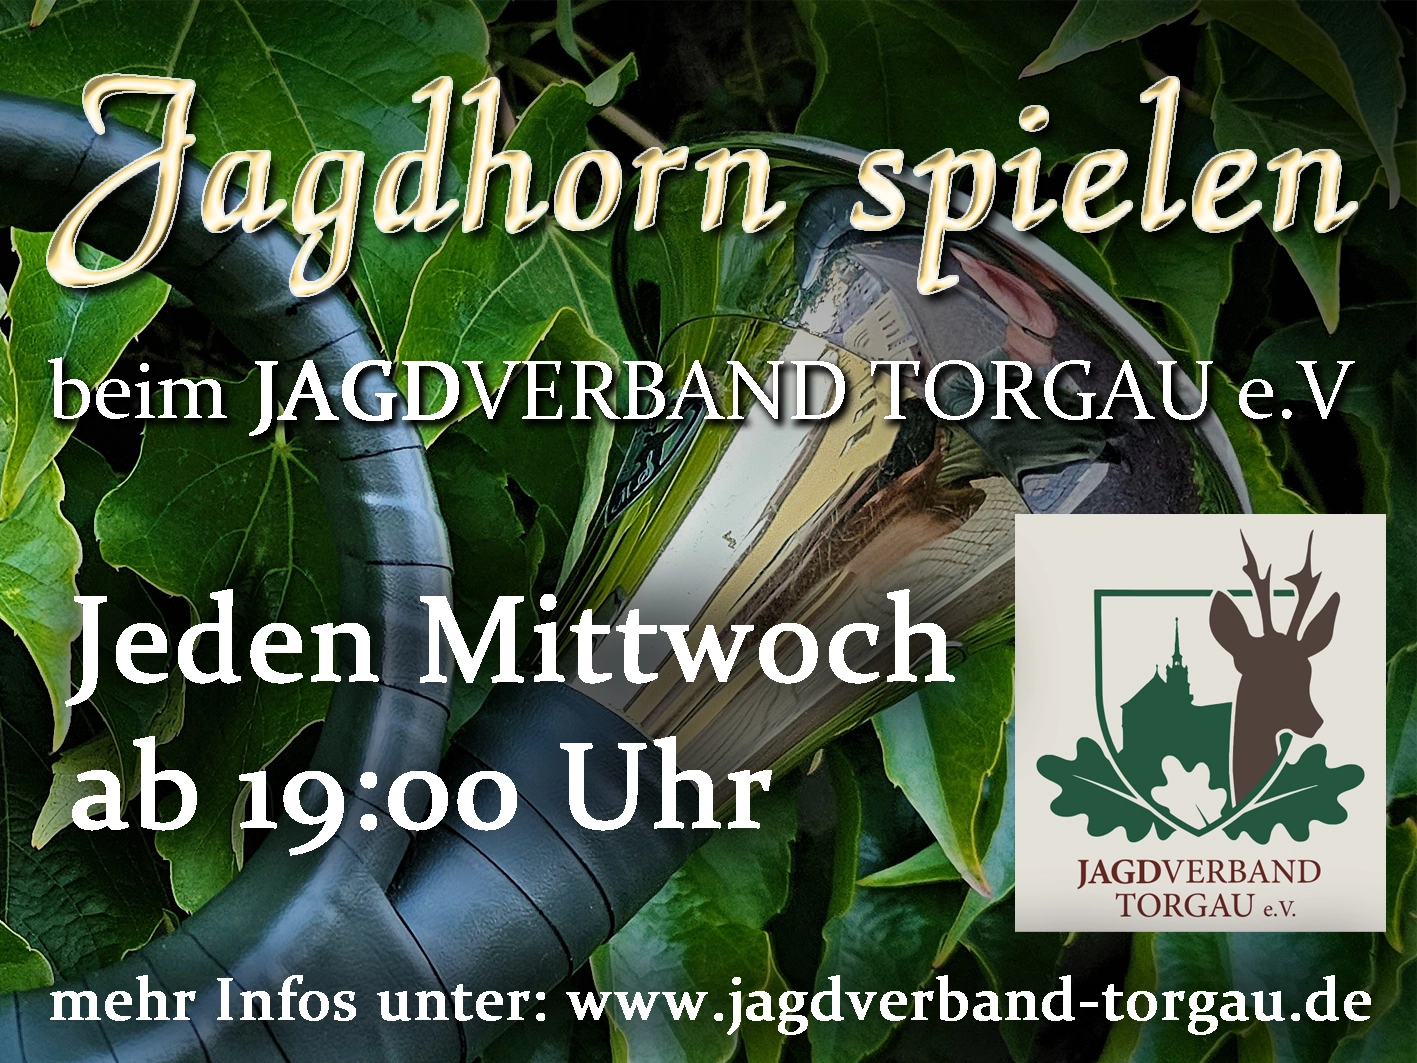 Jagdhorn spielen Jeden Mittwoch ab 19:00 Uhr